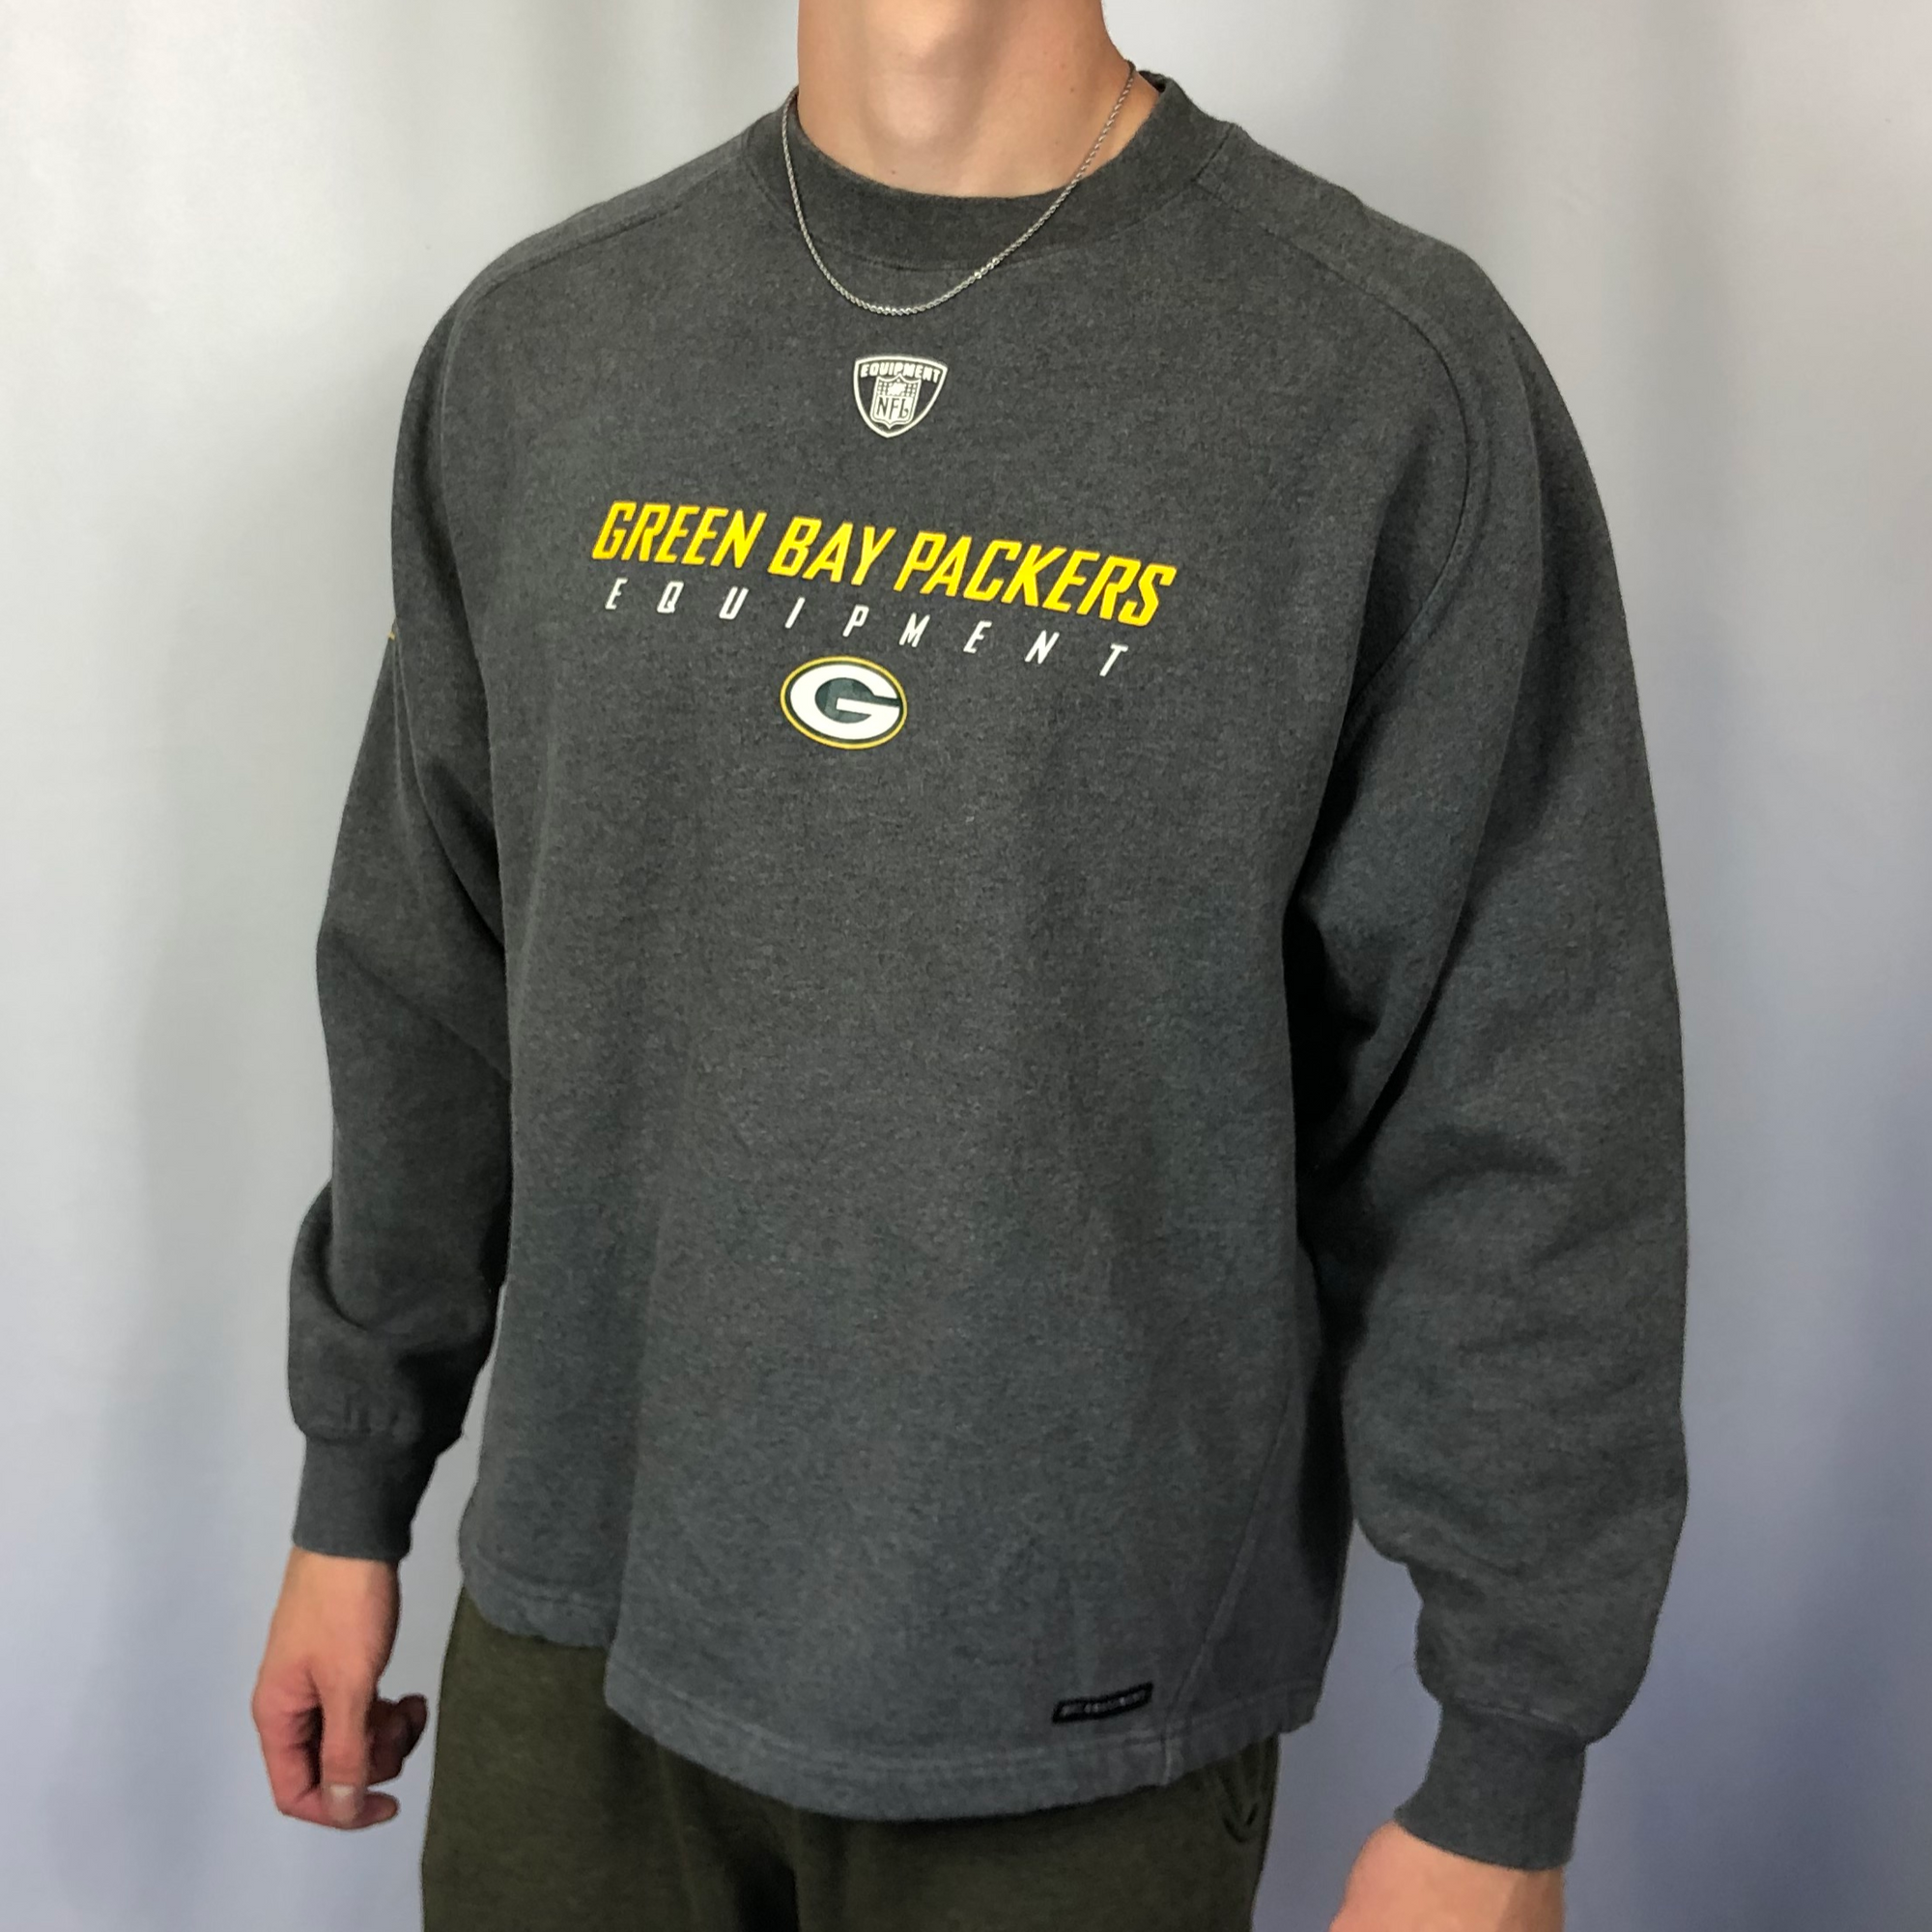 Vintage Reebok Green Bay Packers Sweatshirt - Large